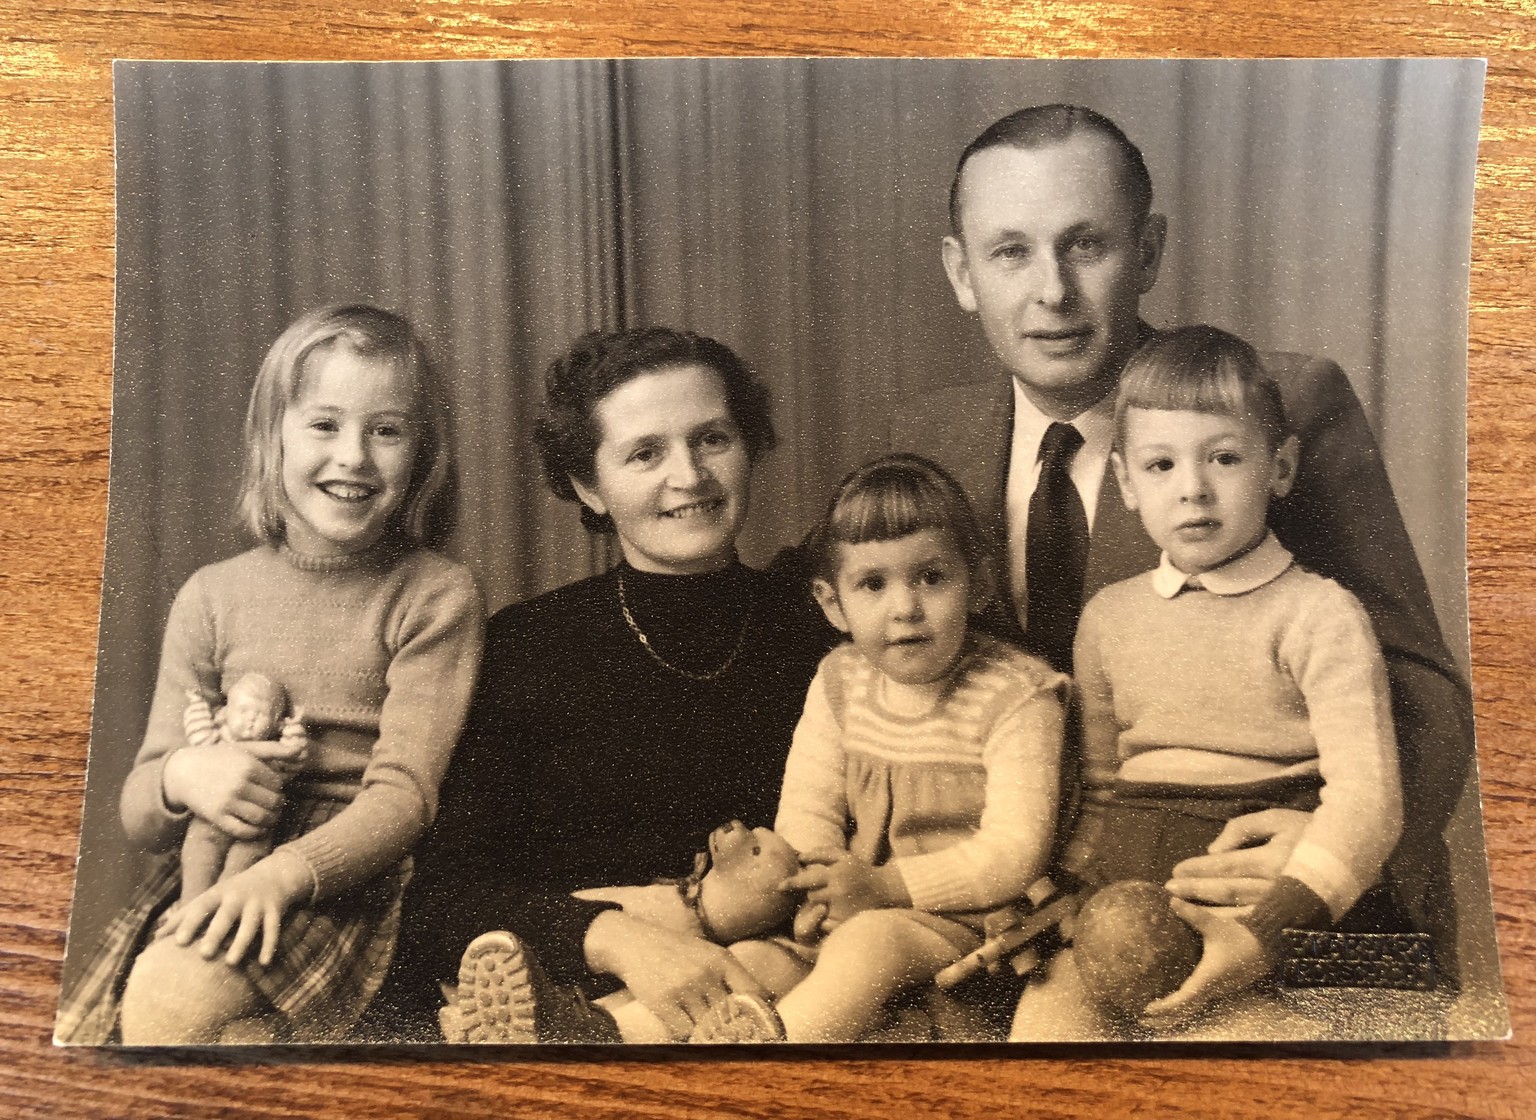 Meine Grosseltern mit ihren drei Kindern. Ruth (links) starb mit 40, Trix (Mitte) mit 56, mein Opa mit 89. Übrig geblieben sind nur meine Oma und mein Vater (rechts).